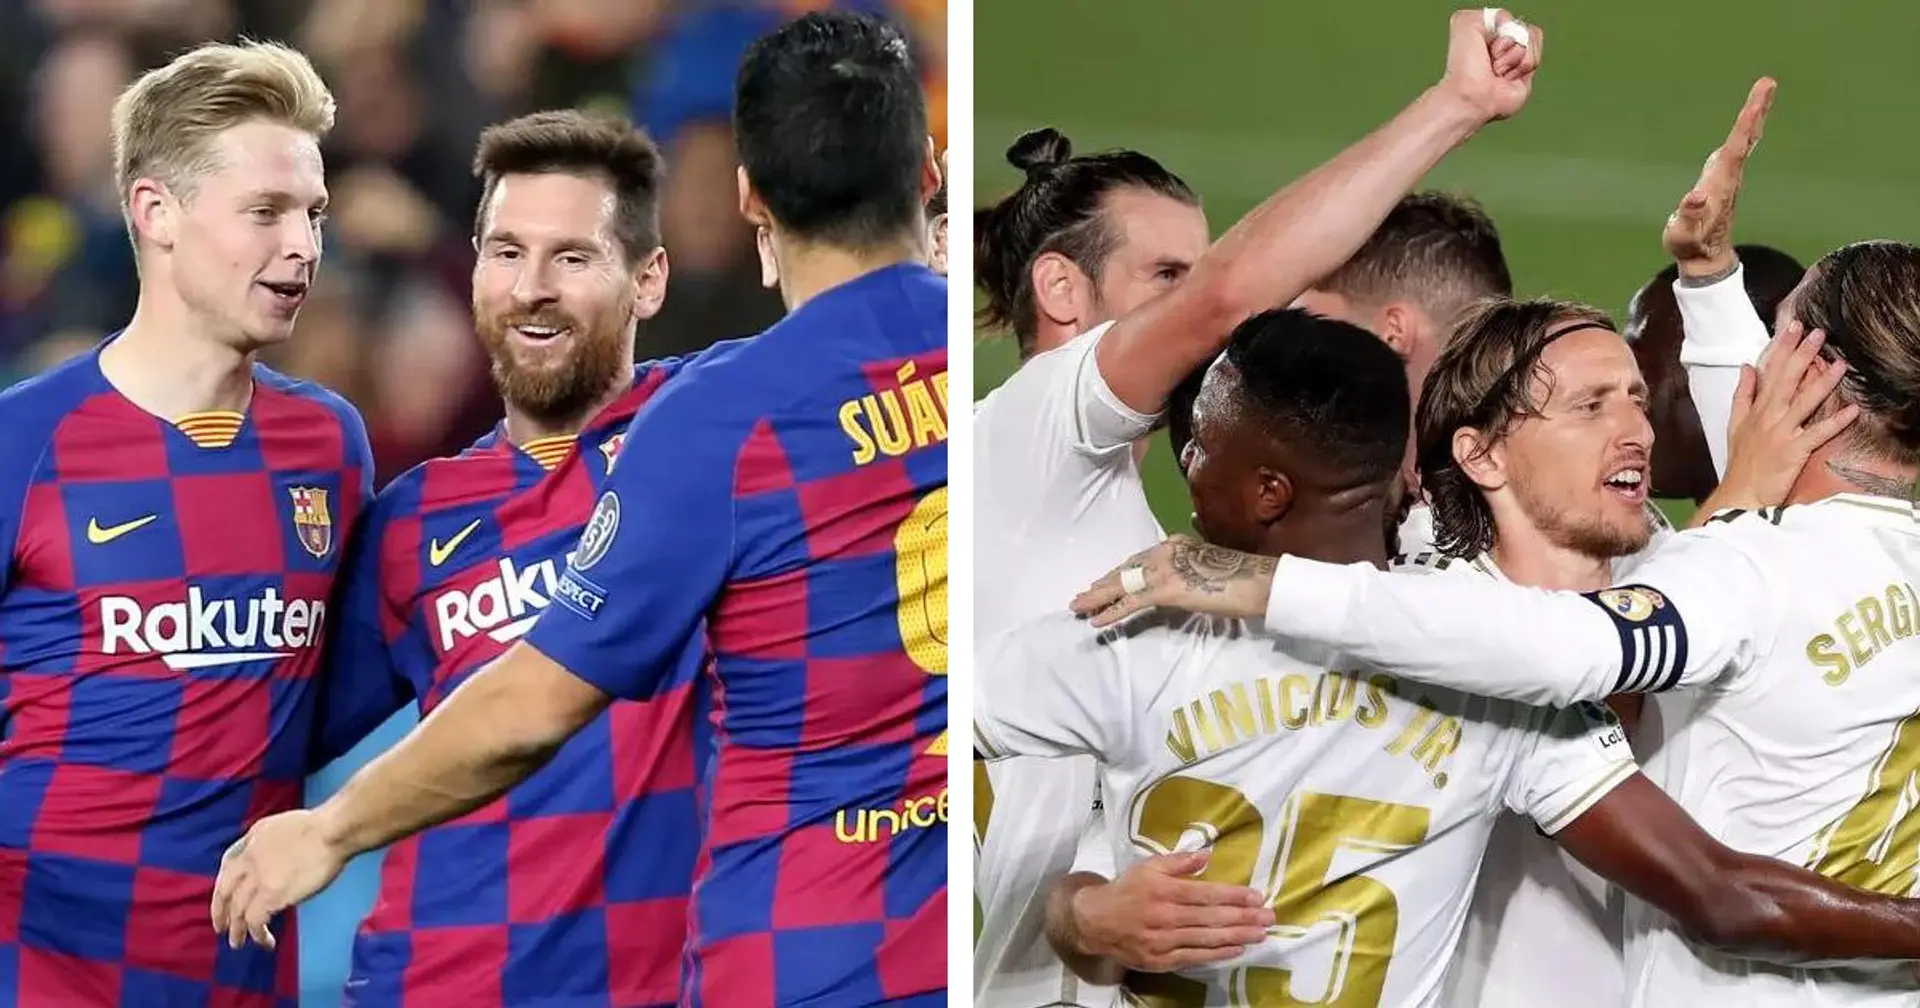 Il reste 7 jours de match: comparer les horaires respectifs de Barcelone et du Real Madrid